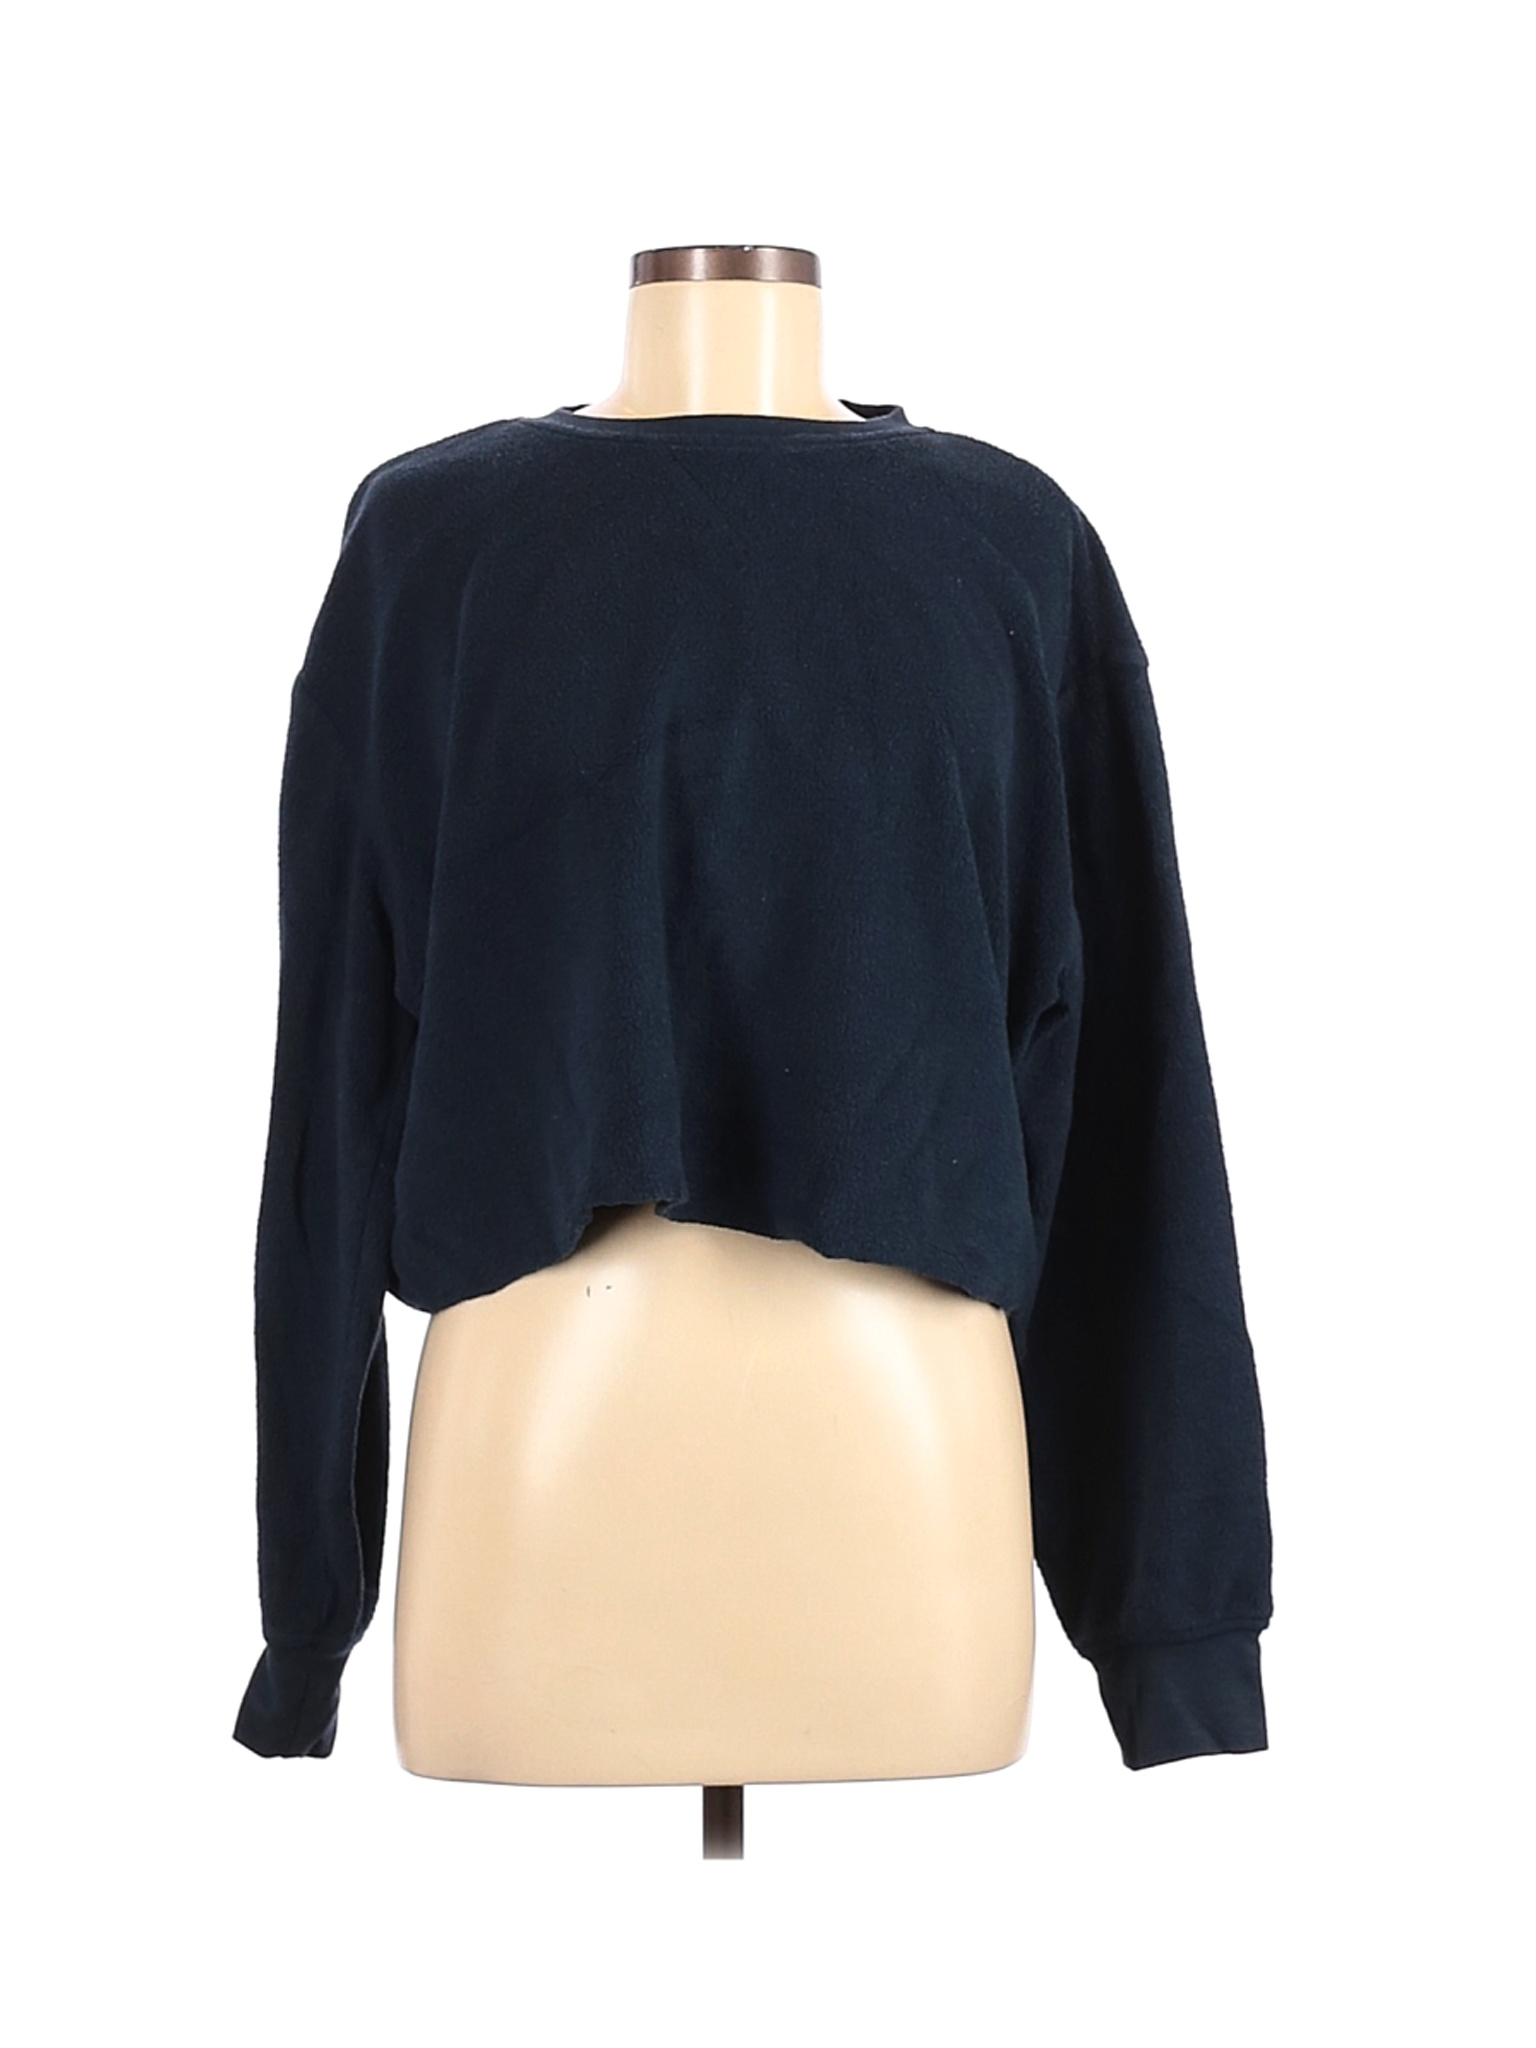 Brooklyn Cloth Mfg. Co. Women Blue Sweatshirt M | eBay